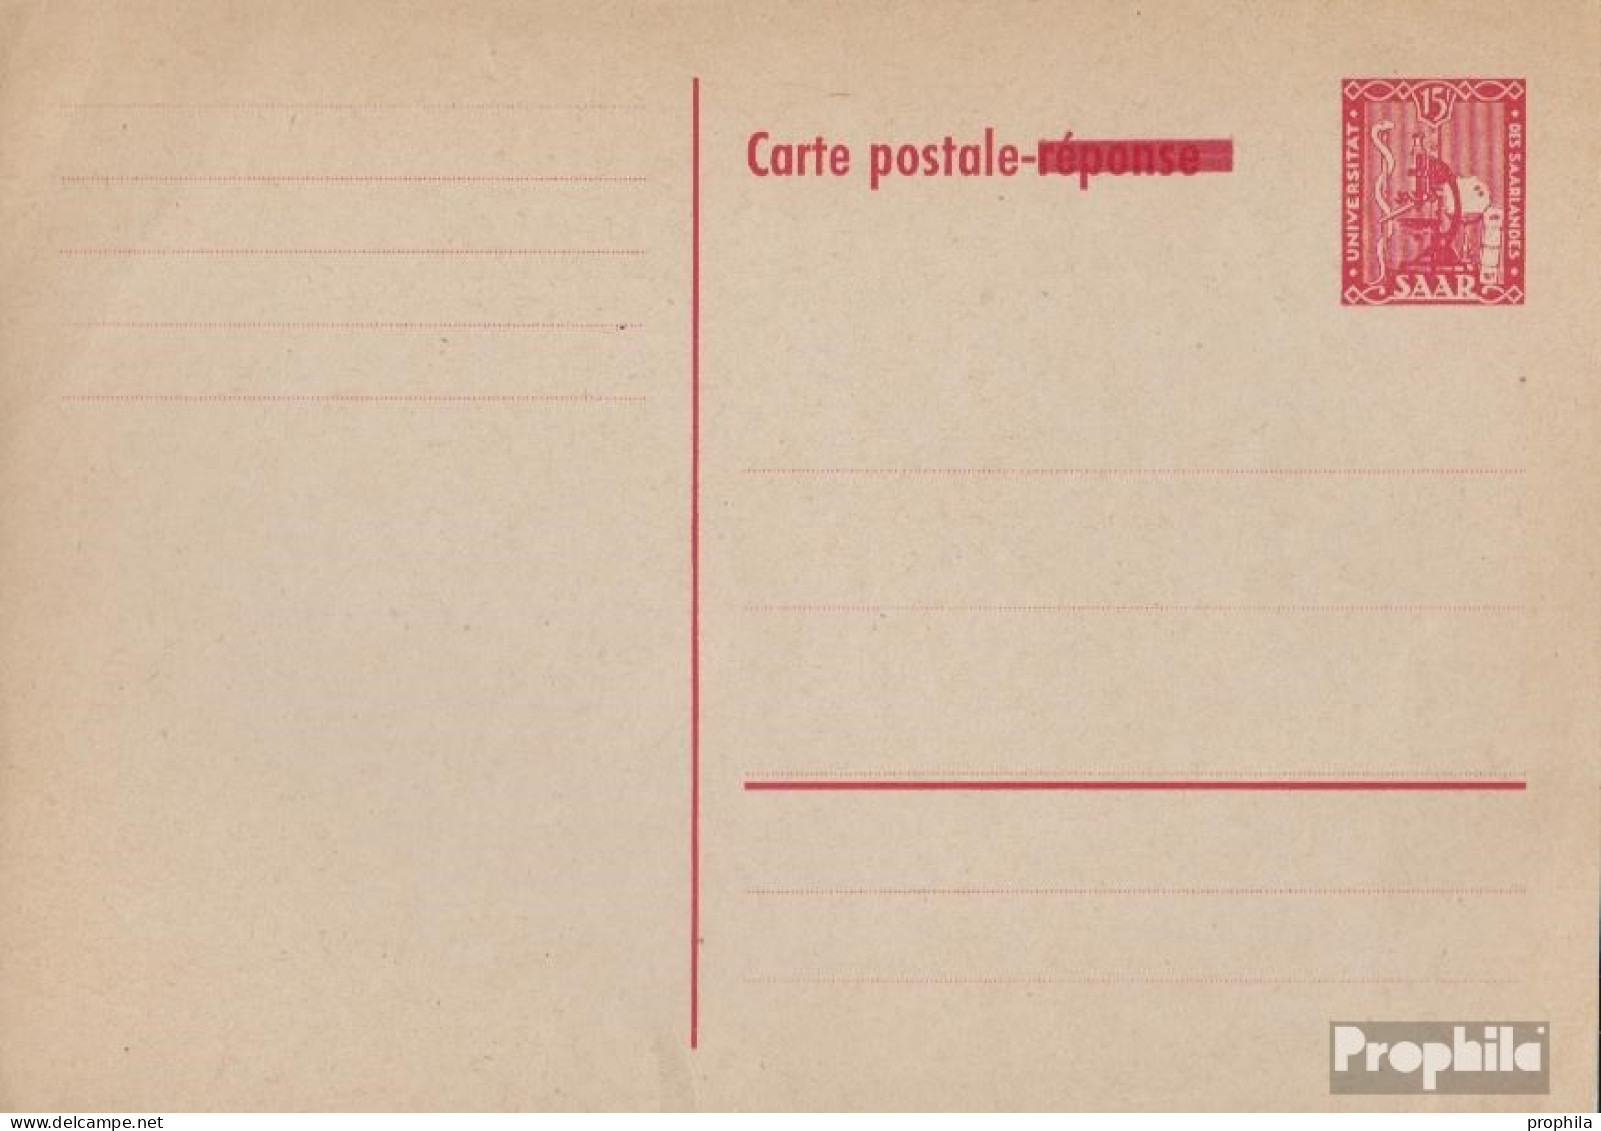 Saarland P38A Amtliche Postkarte Ungebraucht 1954 Aufdruckausgabe - Postal Stationery